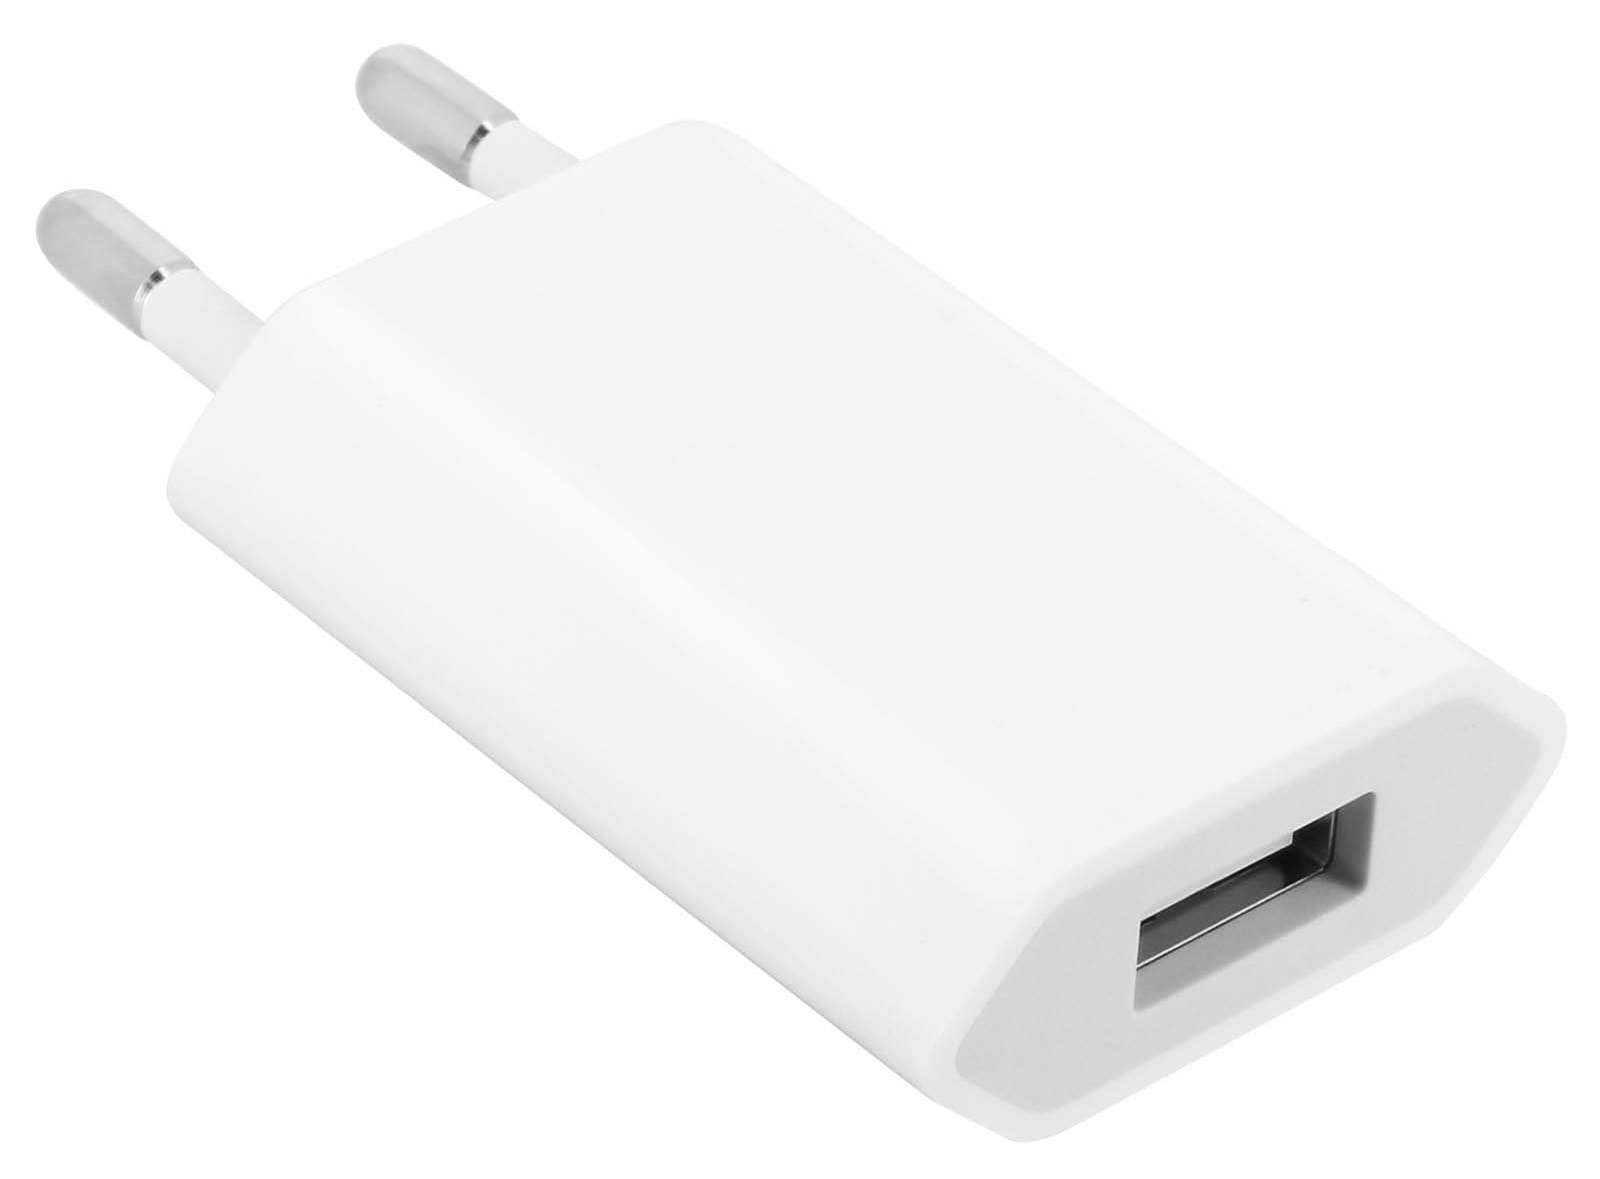 L'attuale alimentatore USB Apple da 5W è compatibile con tutti i modelli di Apple Watch, iPhone e iPod.